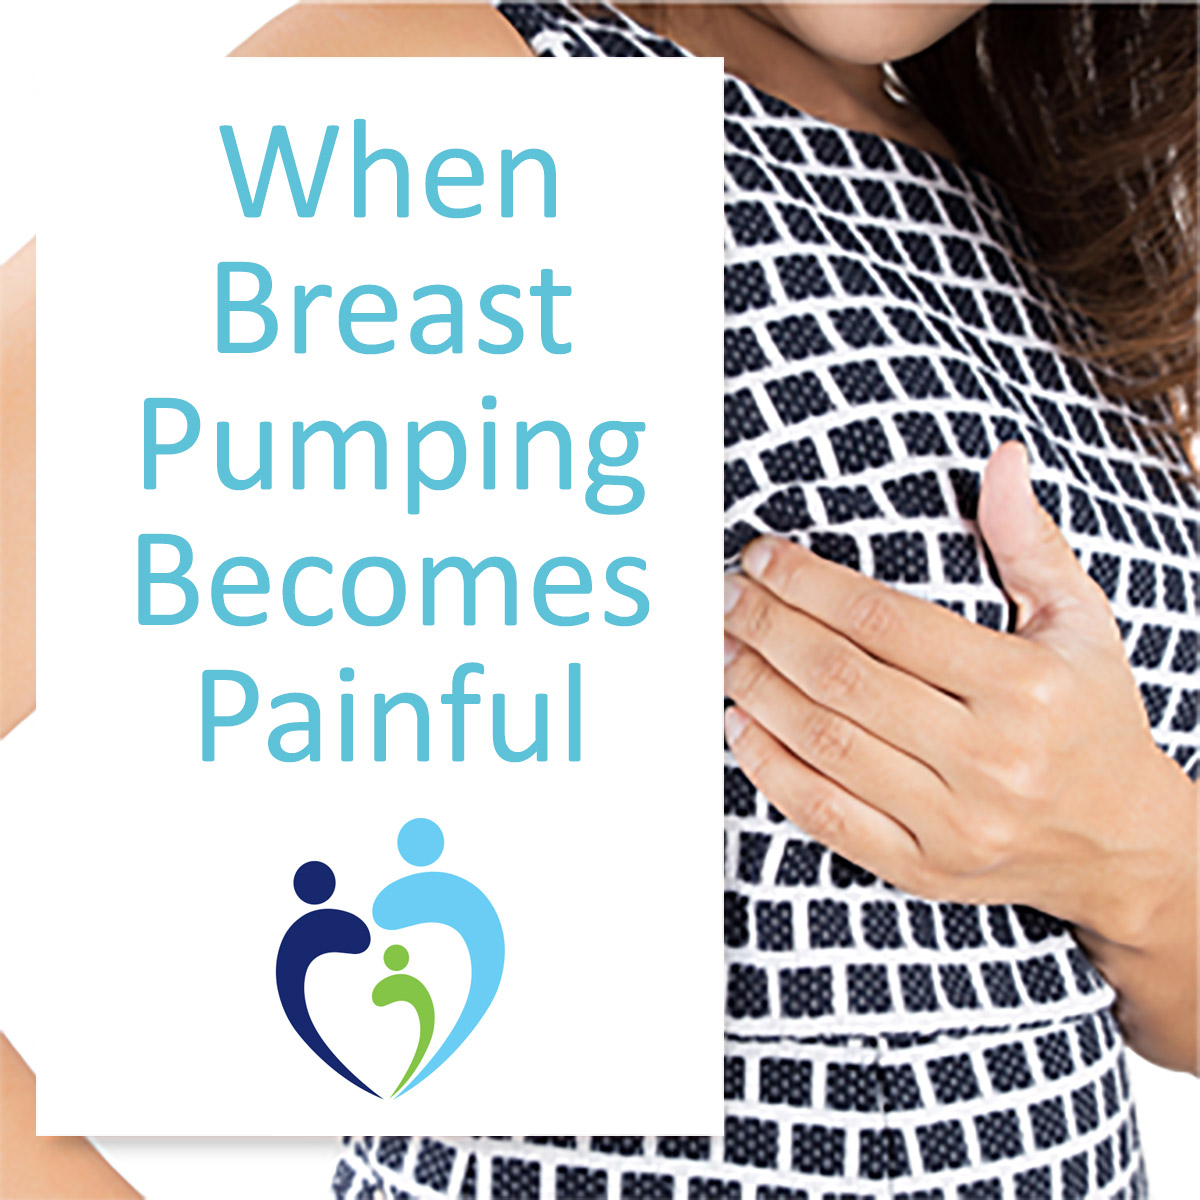 https://breastpumps.byramhealthcare.com/-/media/breastpump/blog/sore-nipples-breast-pumping.jpg?la=en&hash=8425FD710C129AE2C5A22C6284F14E6A